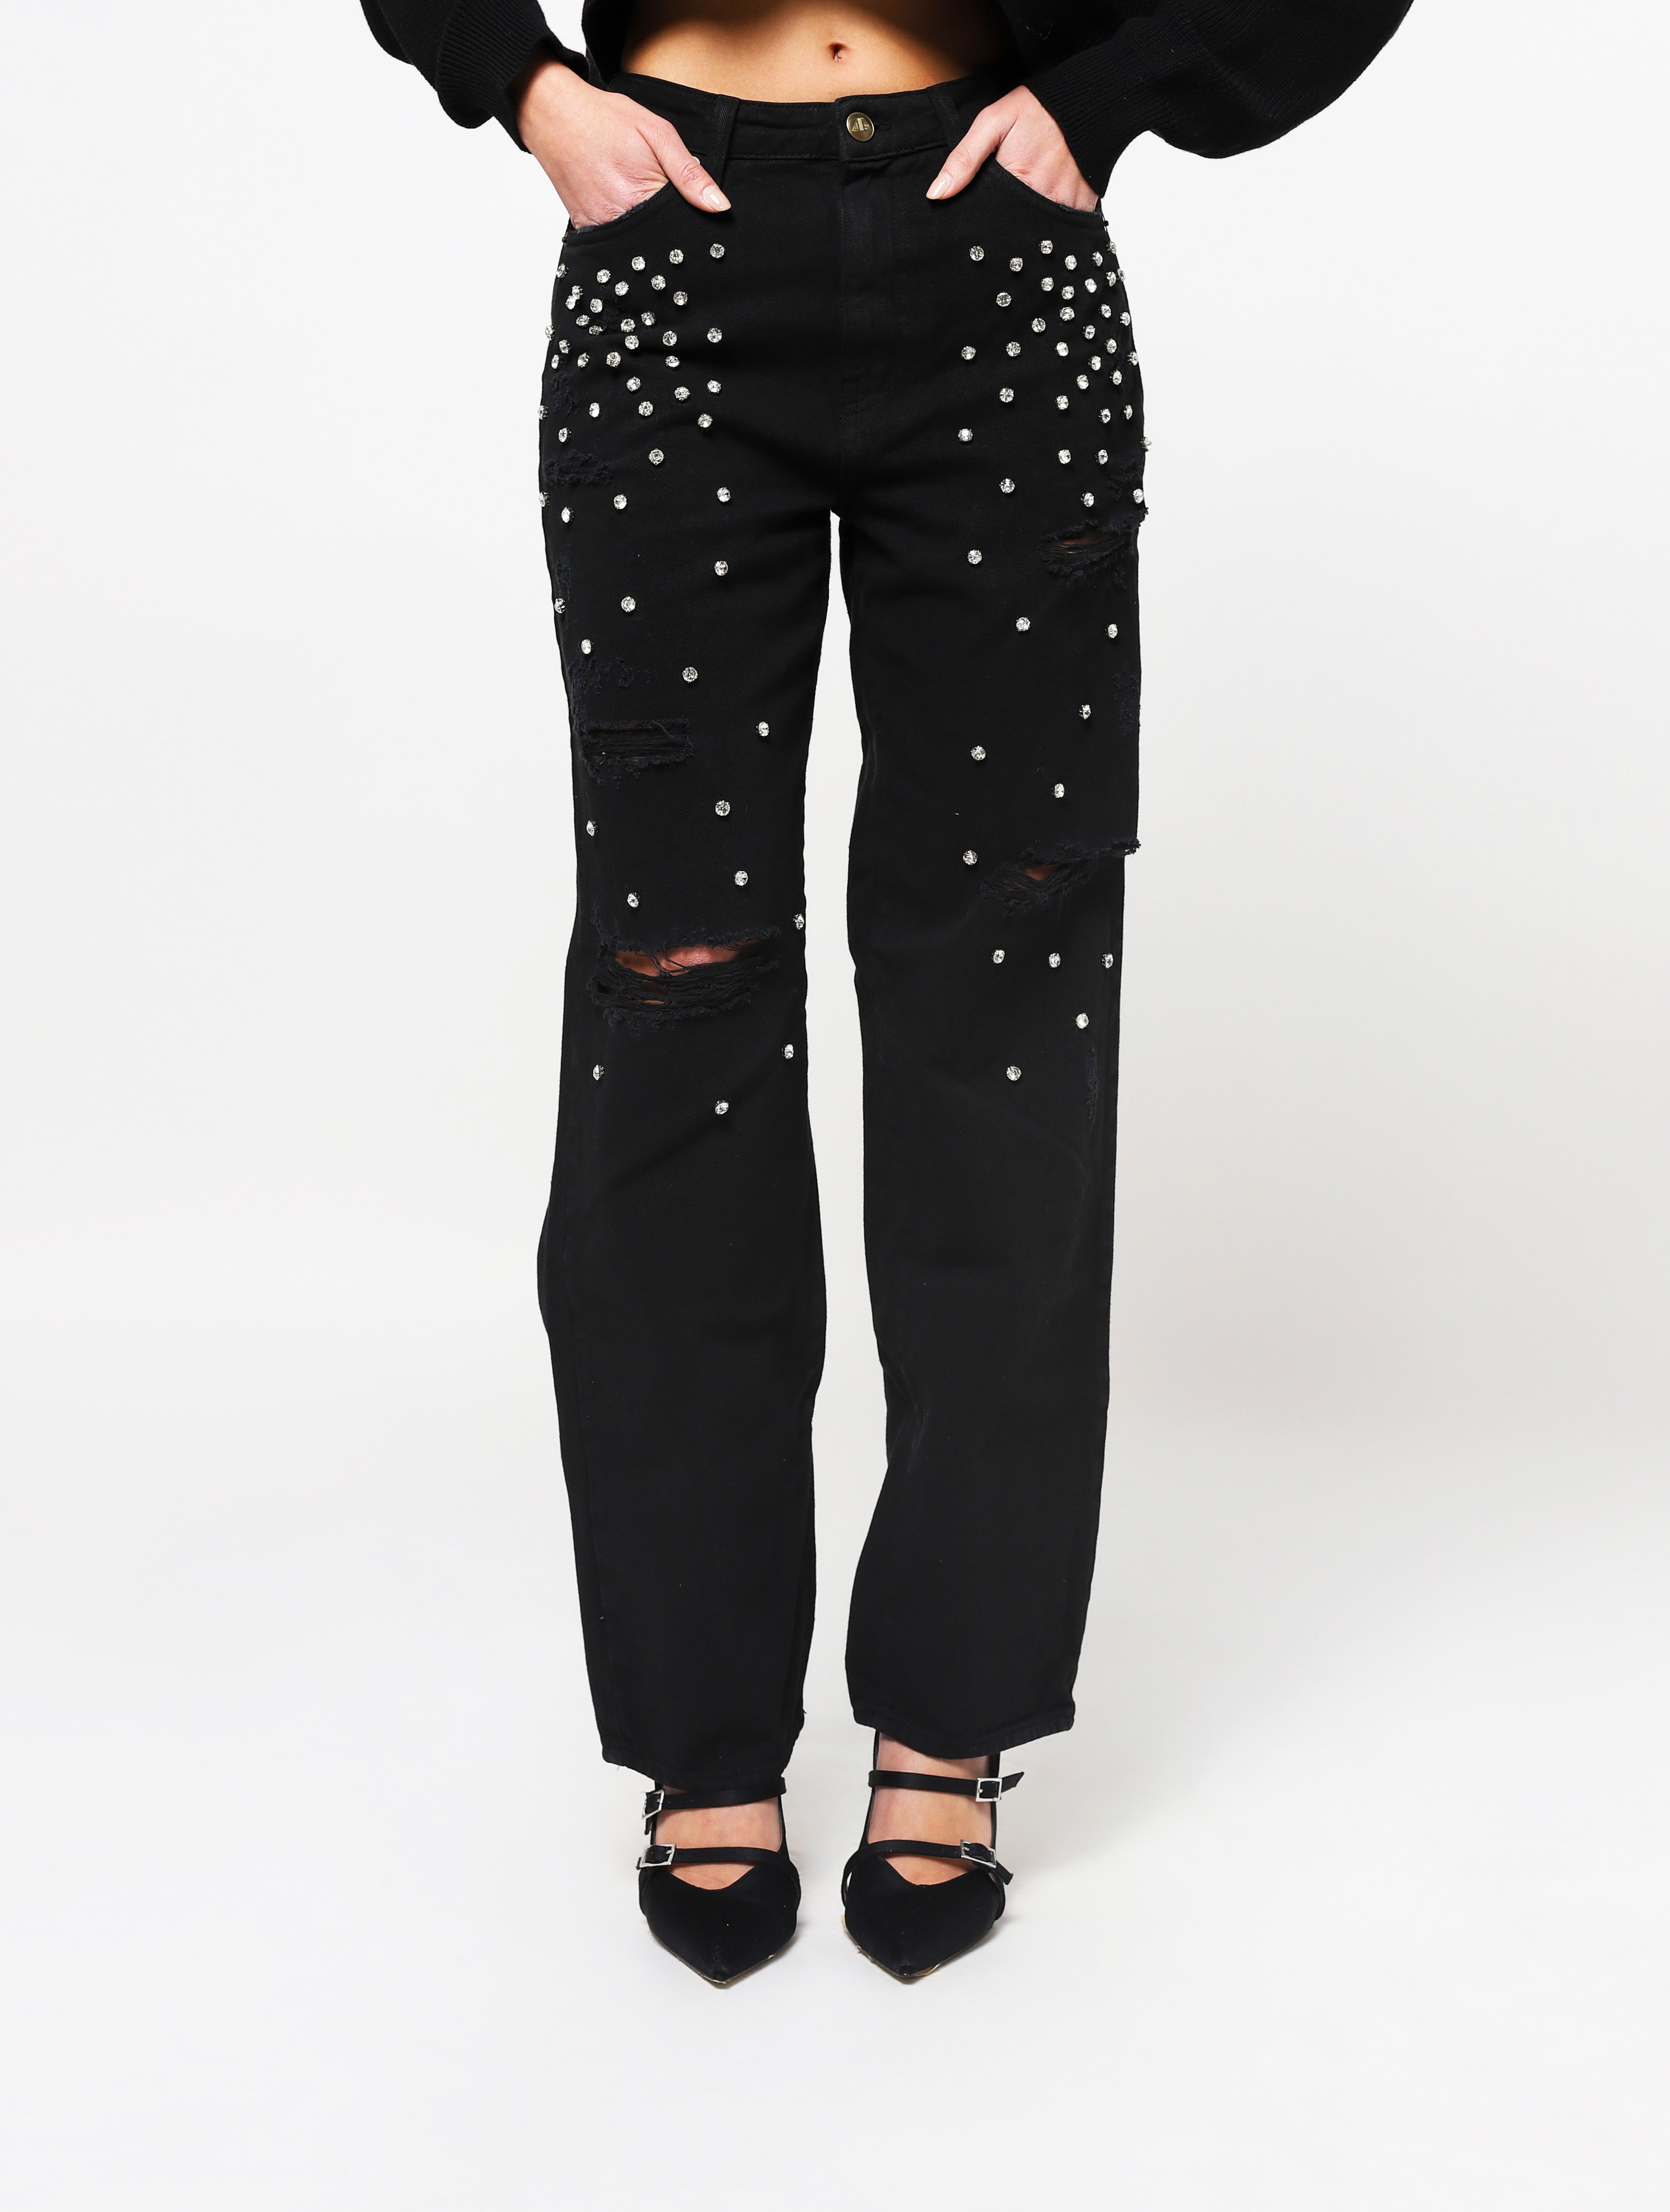 Jeans con 5 tasche, gioielli applicati e lacerazioni sulla parte frontale del pantalone, patch applicata posteriore piccola con nome del brand - nero donna  - 3